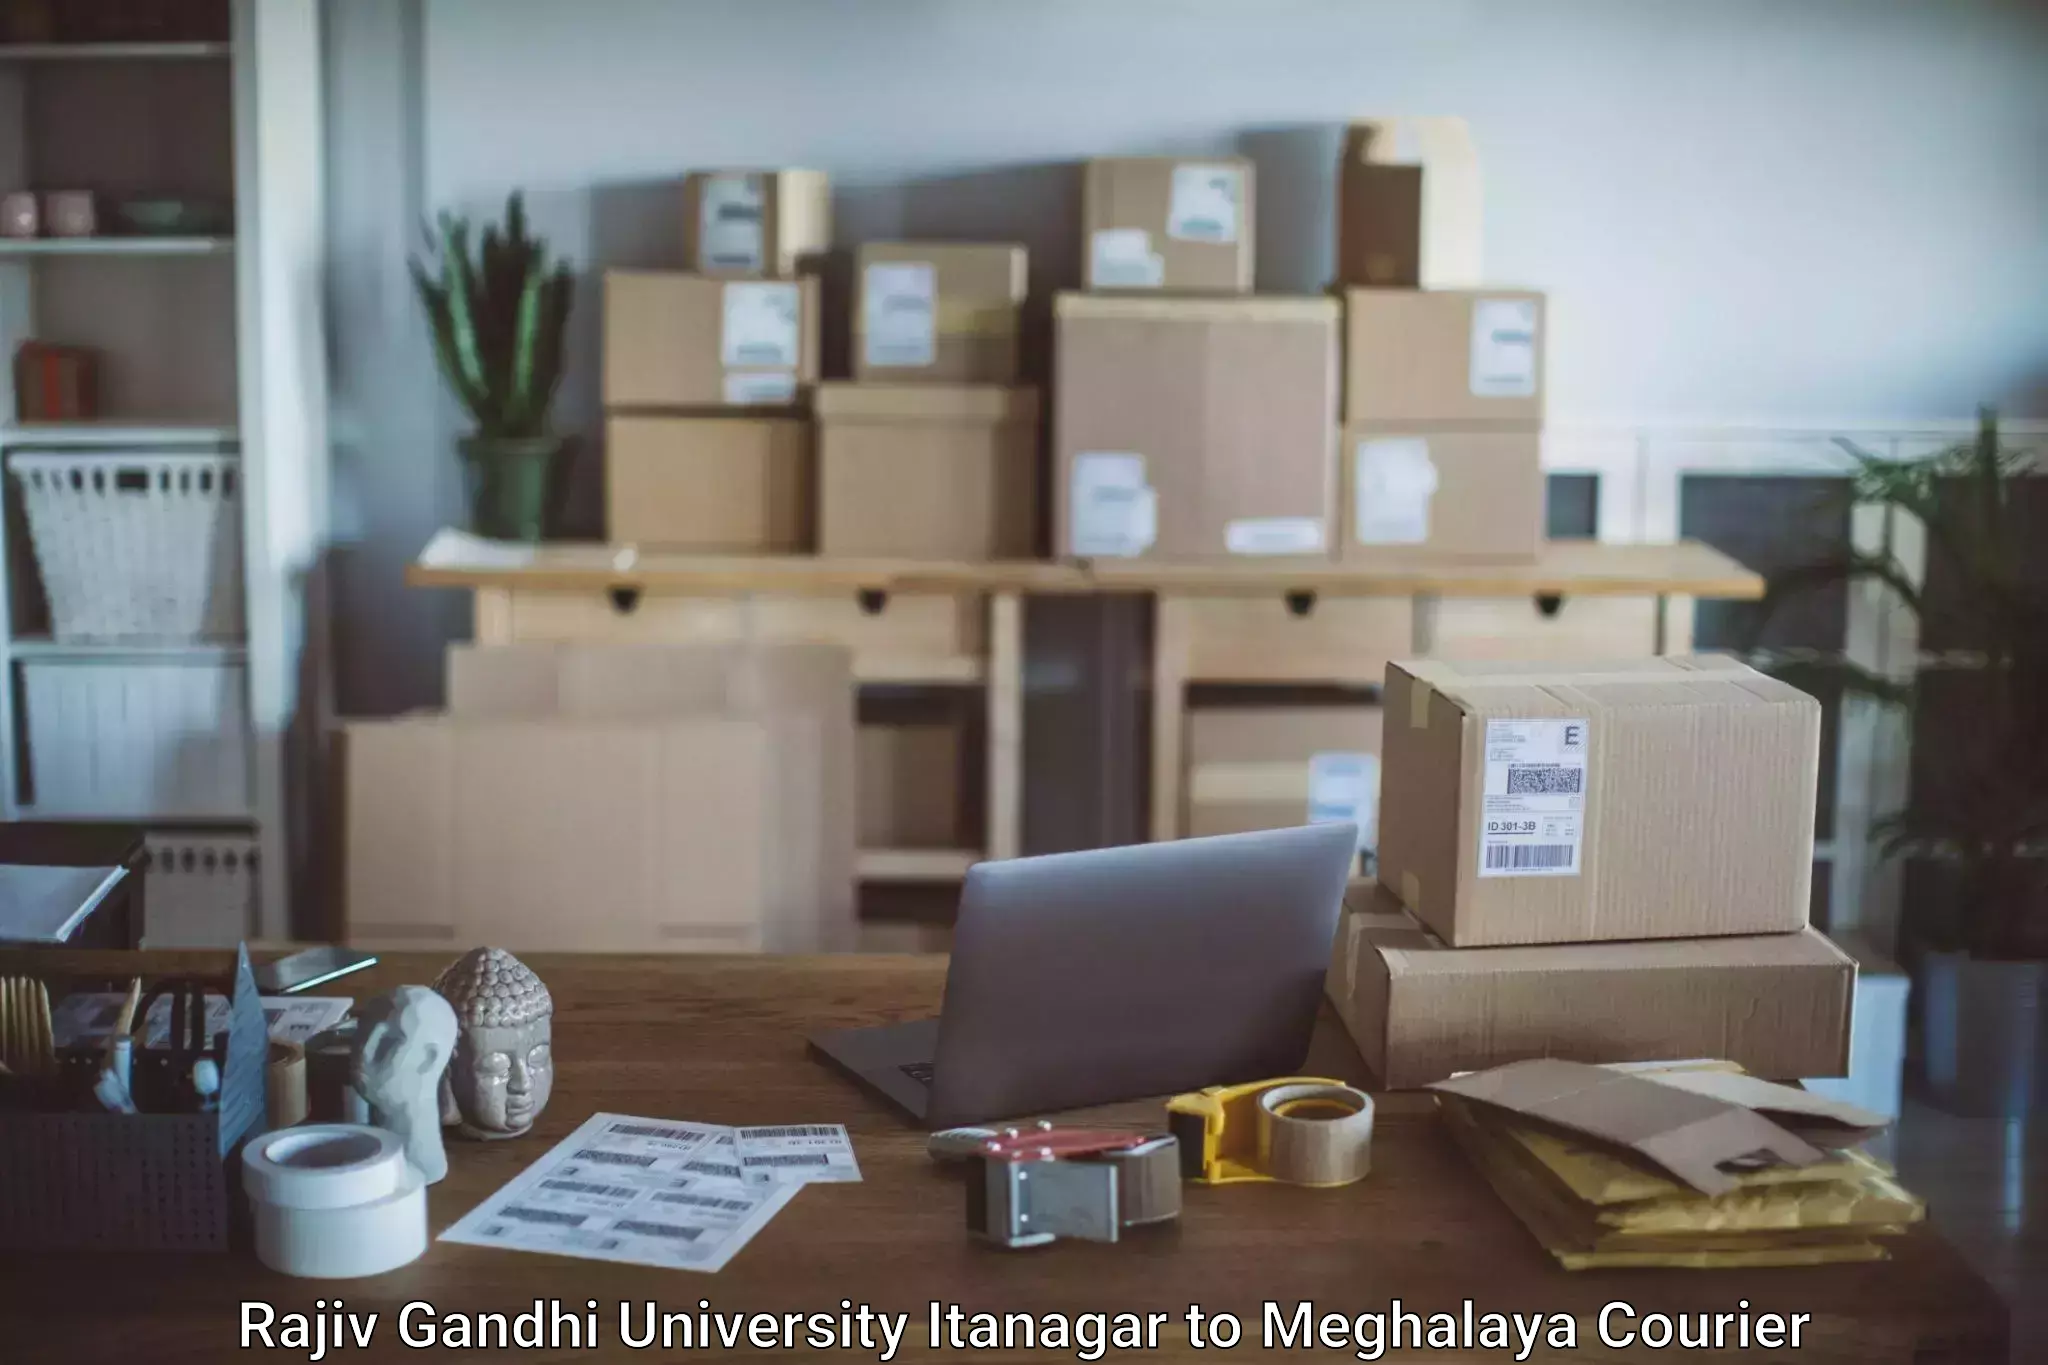 Baggage transport scheduler Rajiv Gandhi University Itanagar to Shillong